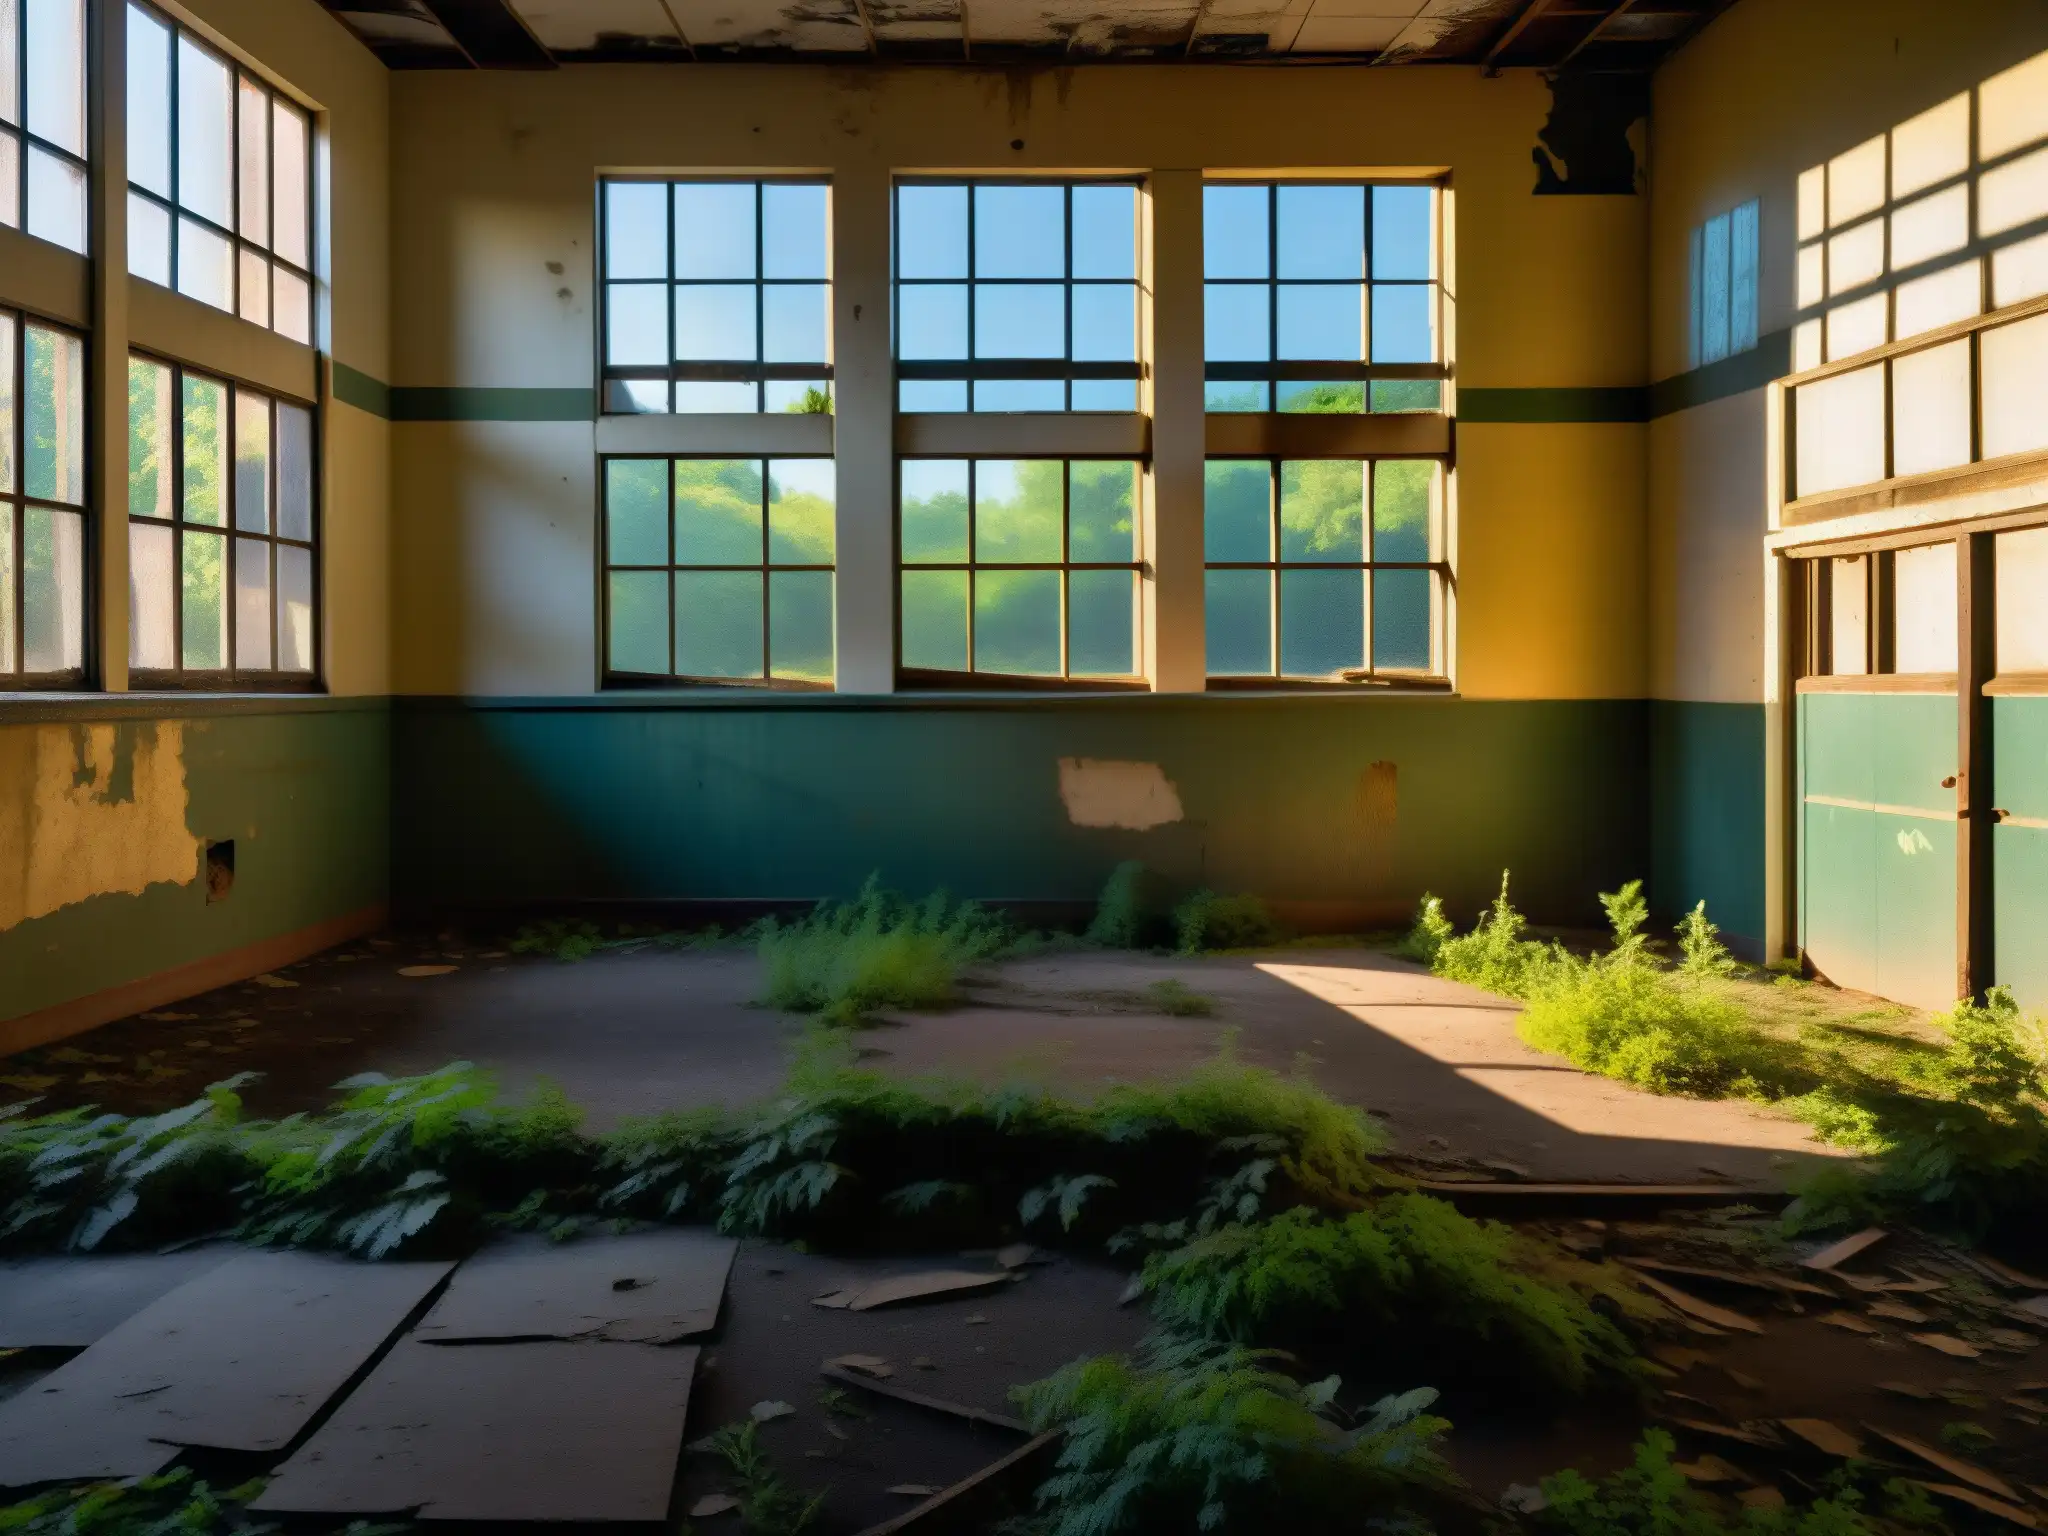 Antigua escuela abandonada al atardecer, con sombras inquietantes y vegetación desolada